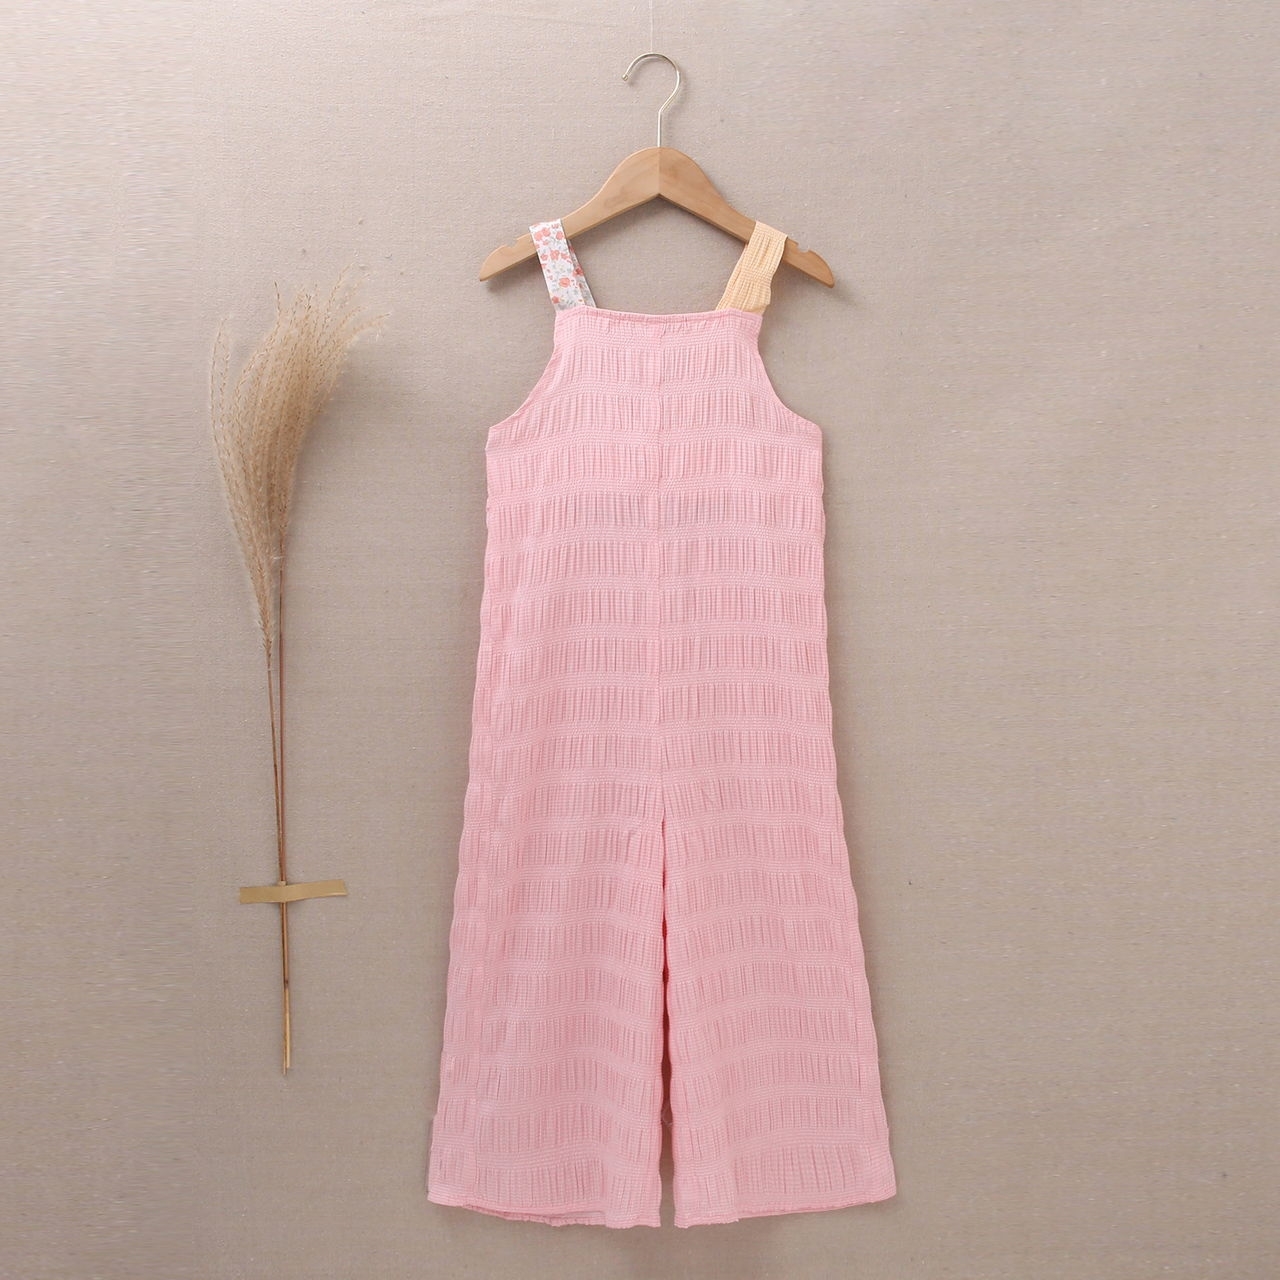 Imagen de Mono teen largo en bambula rosa y combinado de tejidos